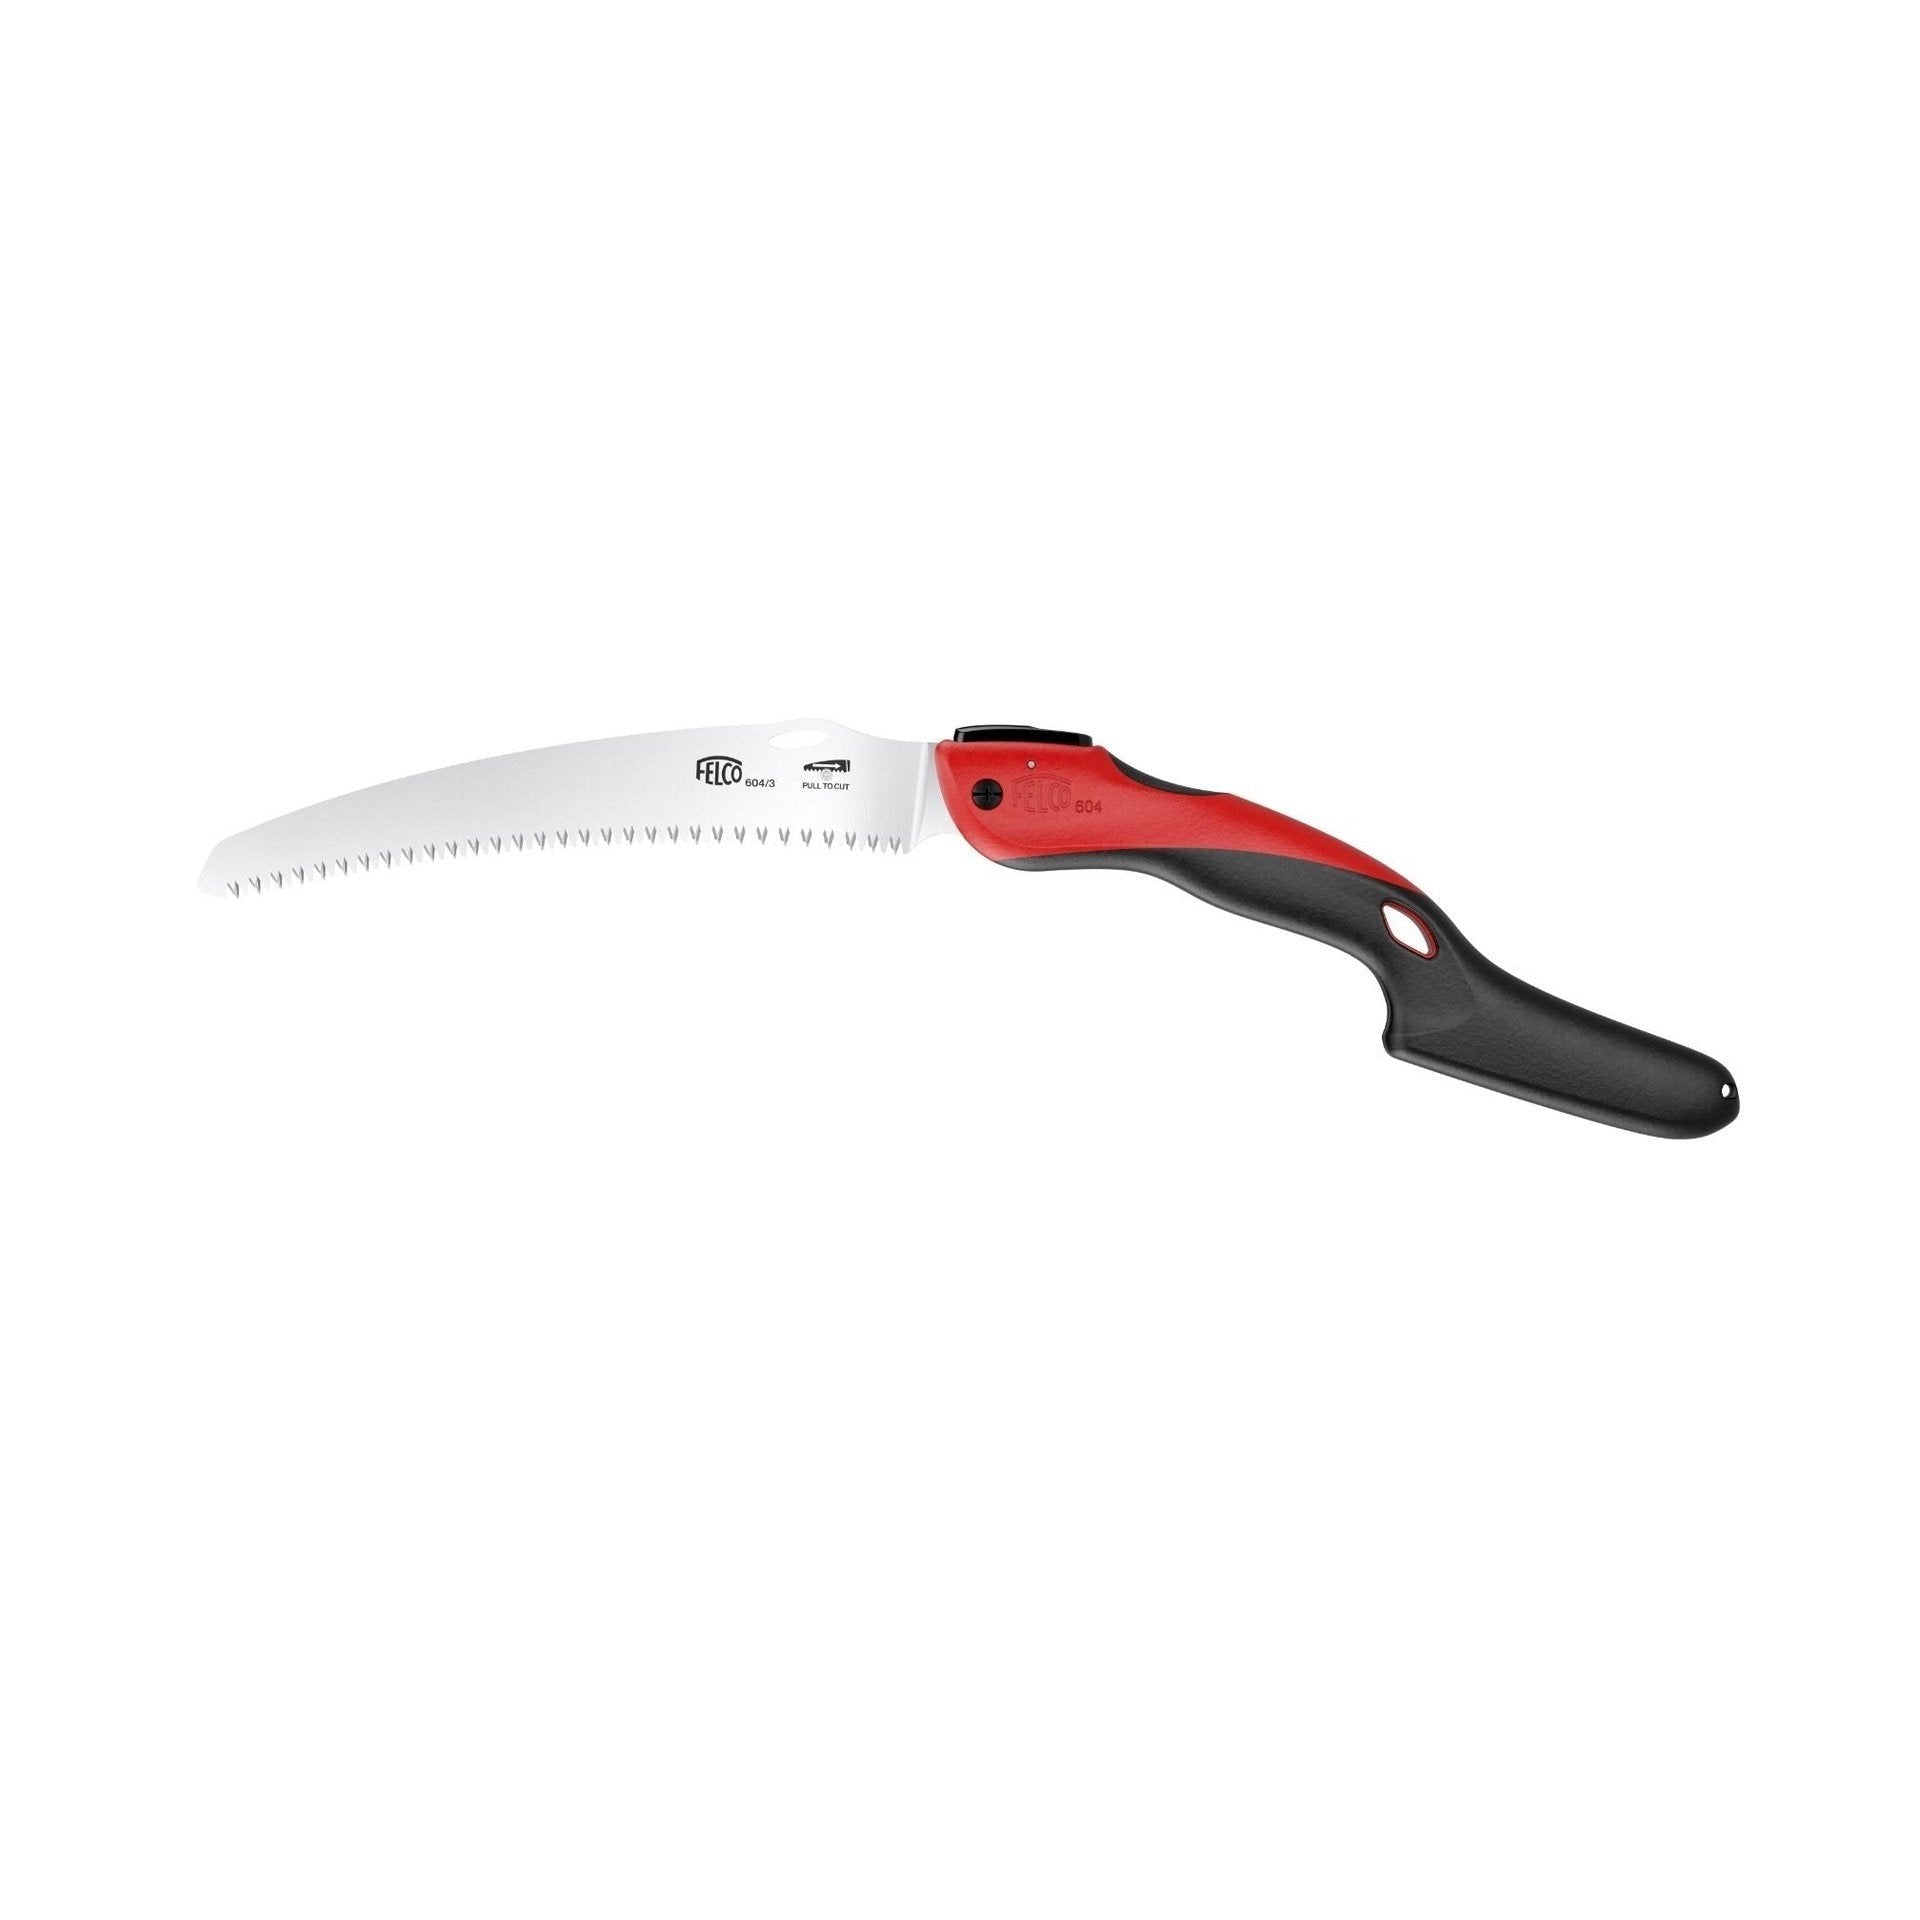 FELCO 604 - Saw - Folding Pull-Stroke Saw - Blade 24 cm